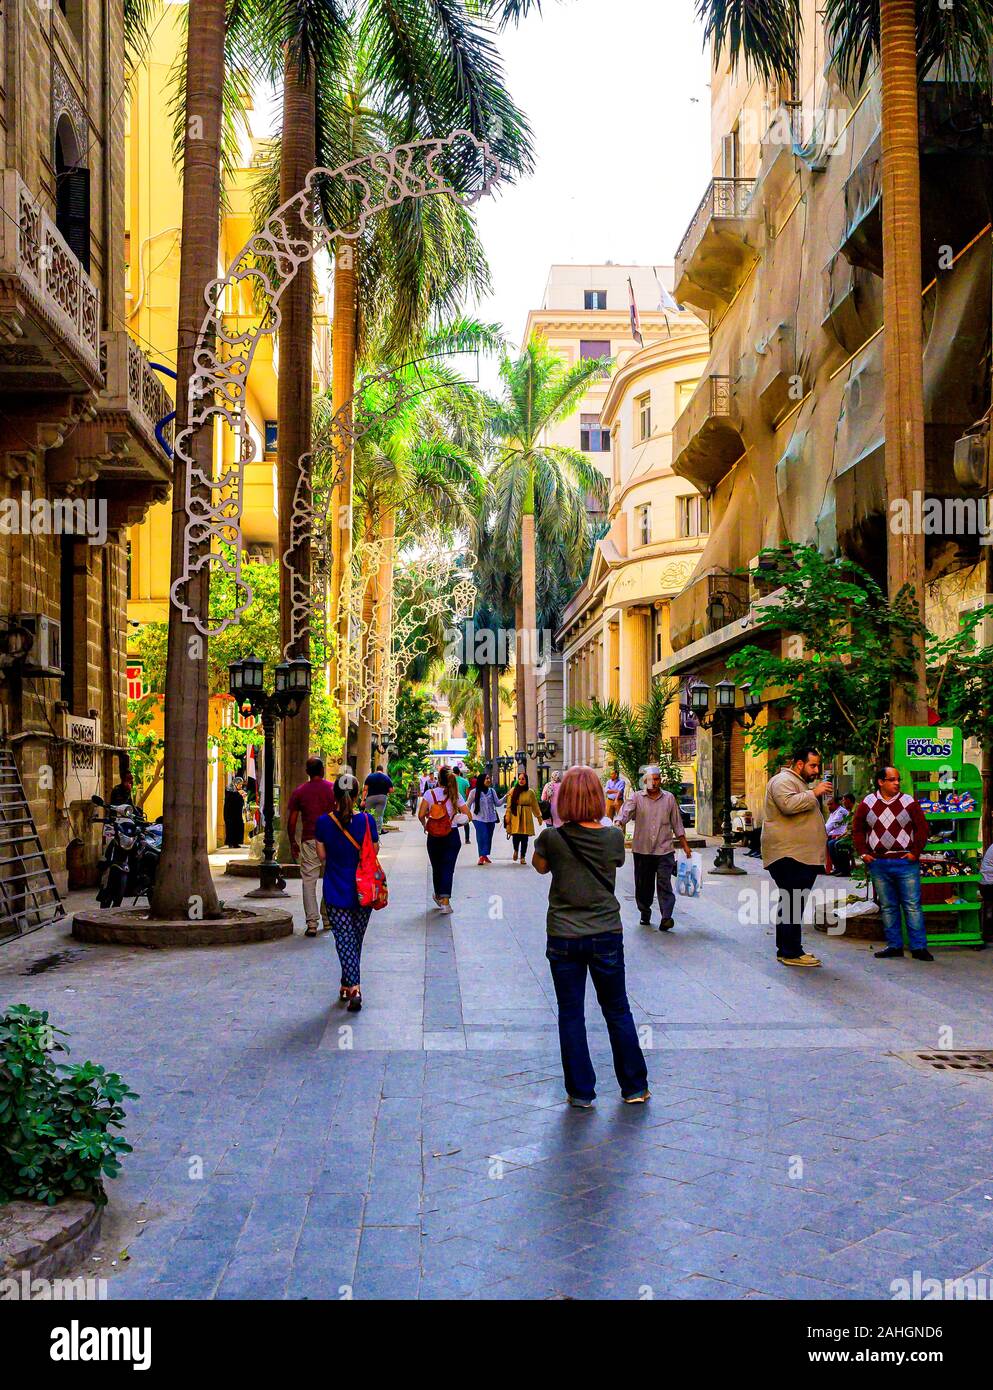 Passeggiate nel centro cittadino del Cairo lungo Al-Sherifein street, che offre una miscela di neo-classica, barocco e rococò e art nouveau stili architettonici. Foto Stock